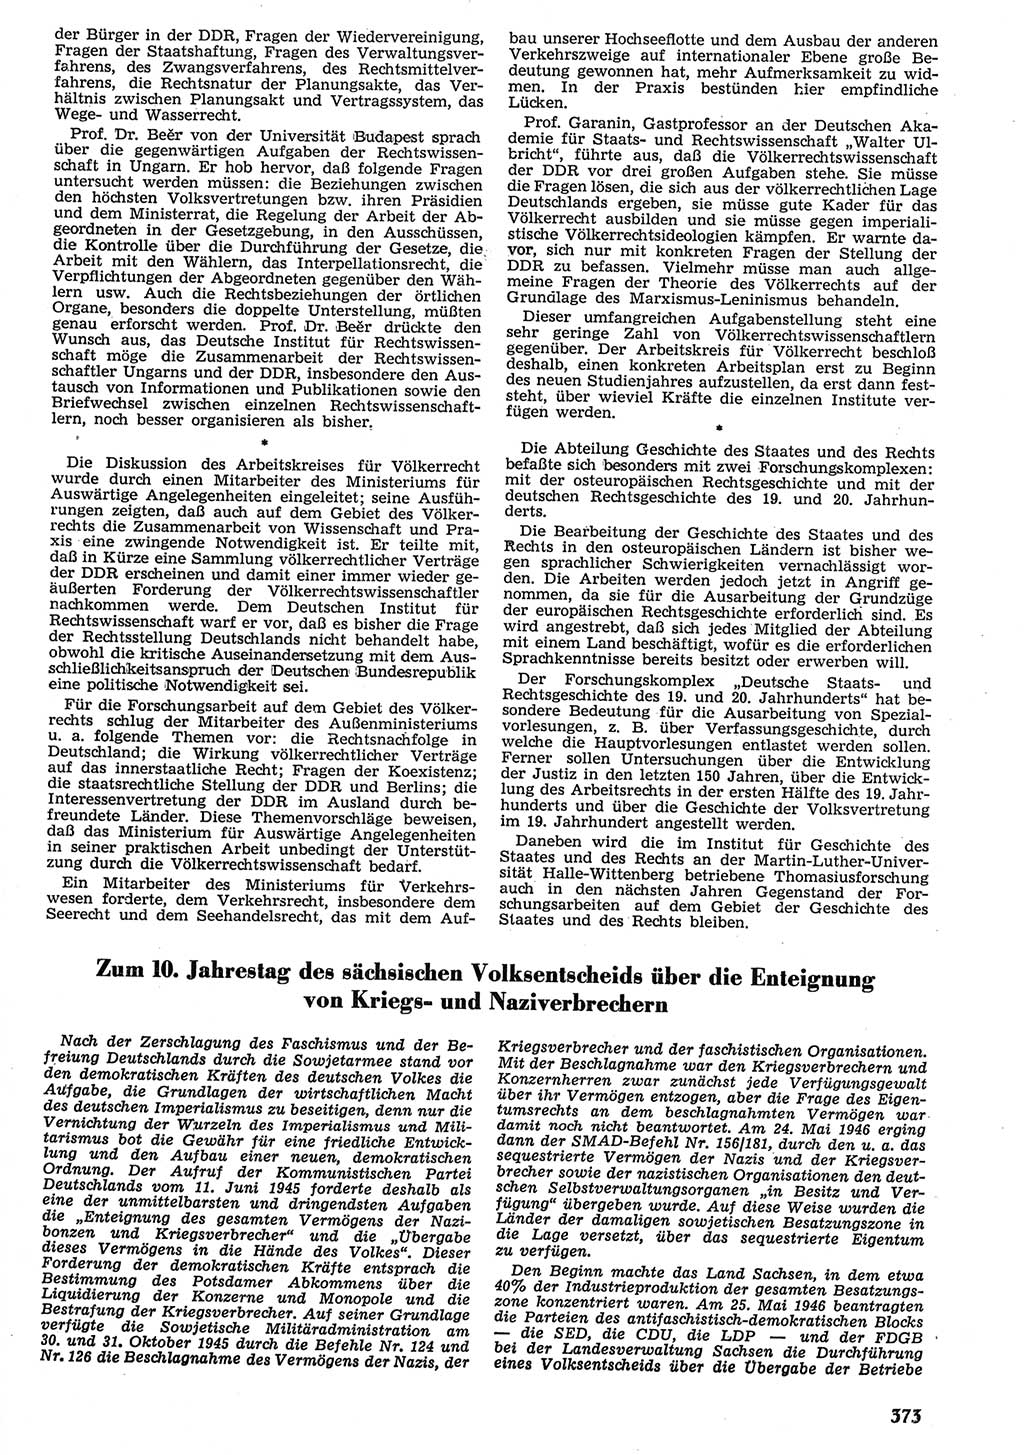 Neue Justiz (NJ), Zeitschrift für Recht und Rechtswissenschaft [Deutsche Demokratische Republik (DDR)], 10. Jahrgang 1956, Seite 373 (NJ DDR 1956, S. 373)